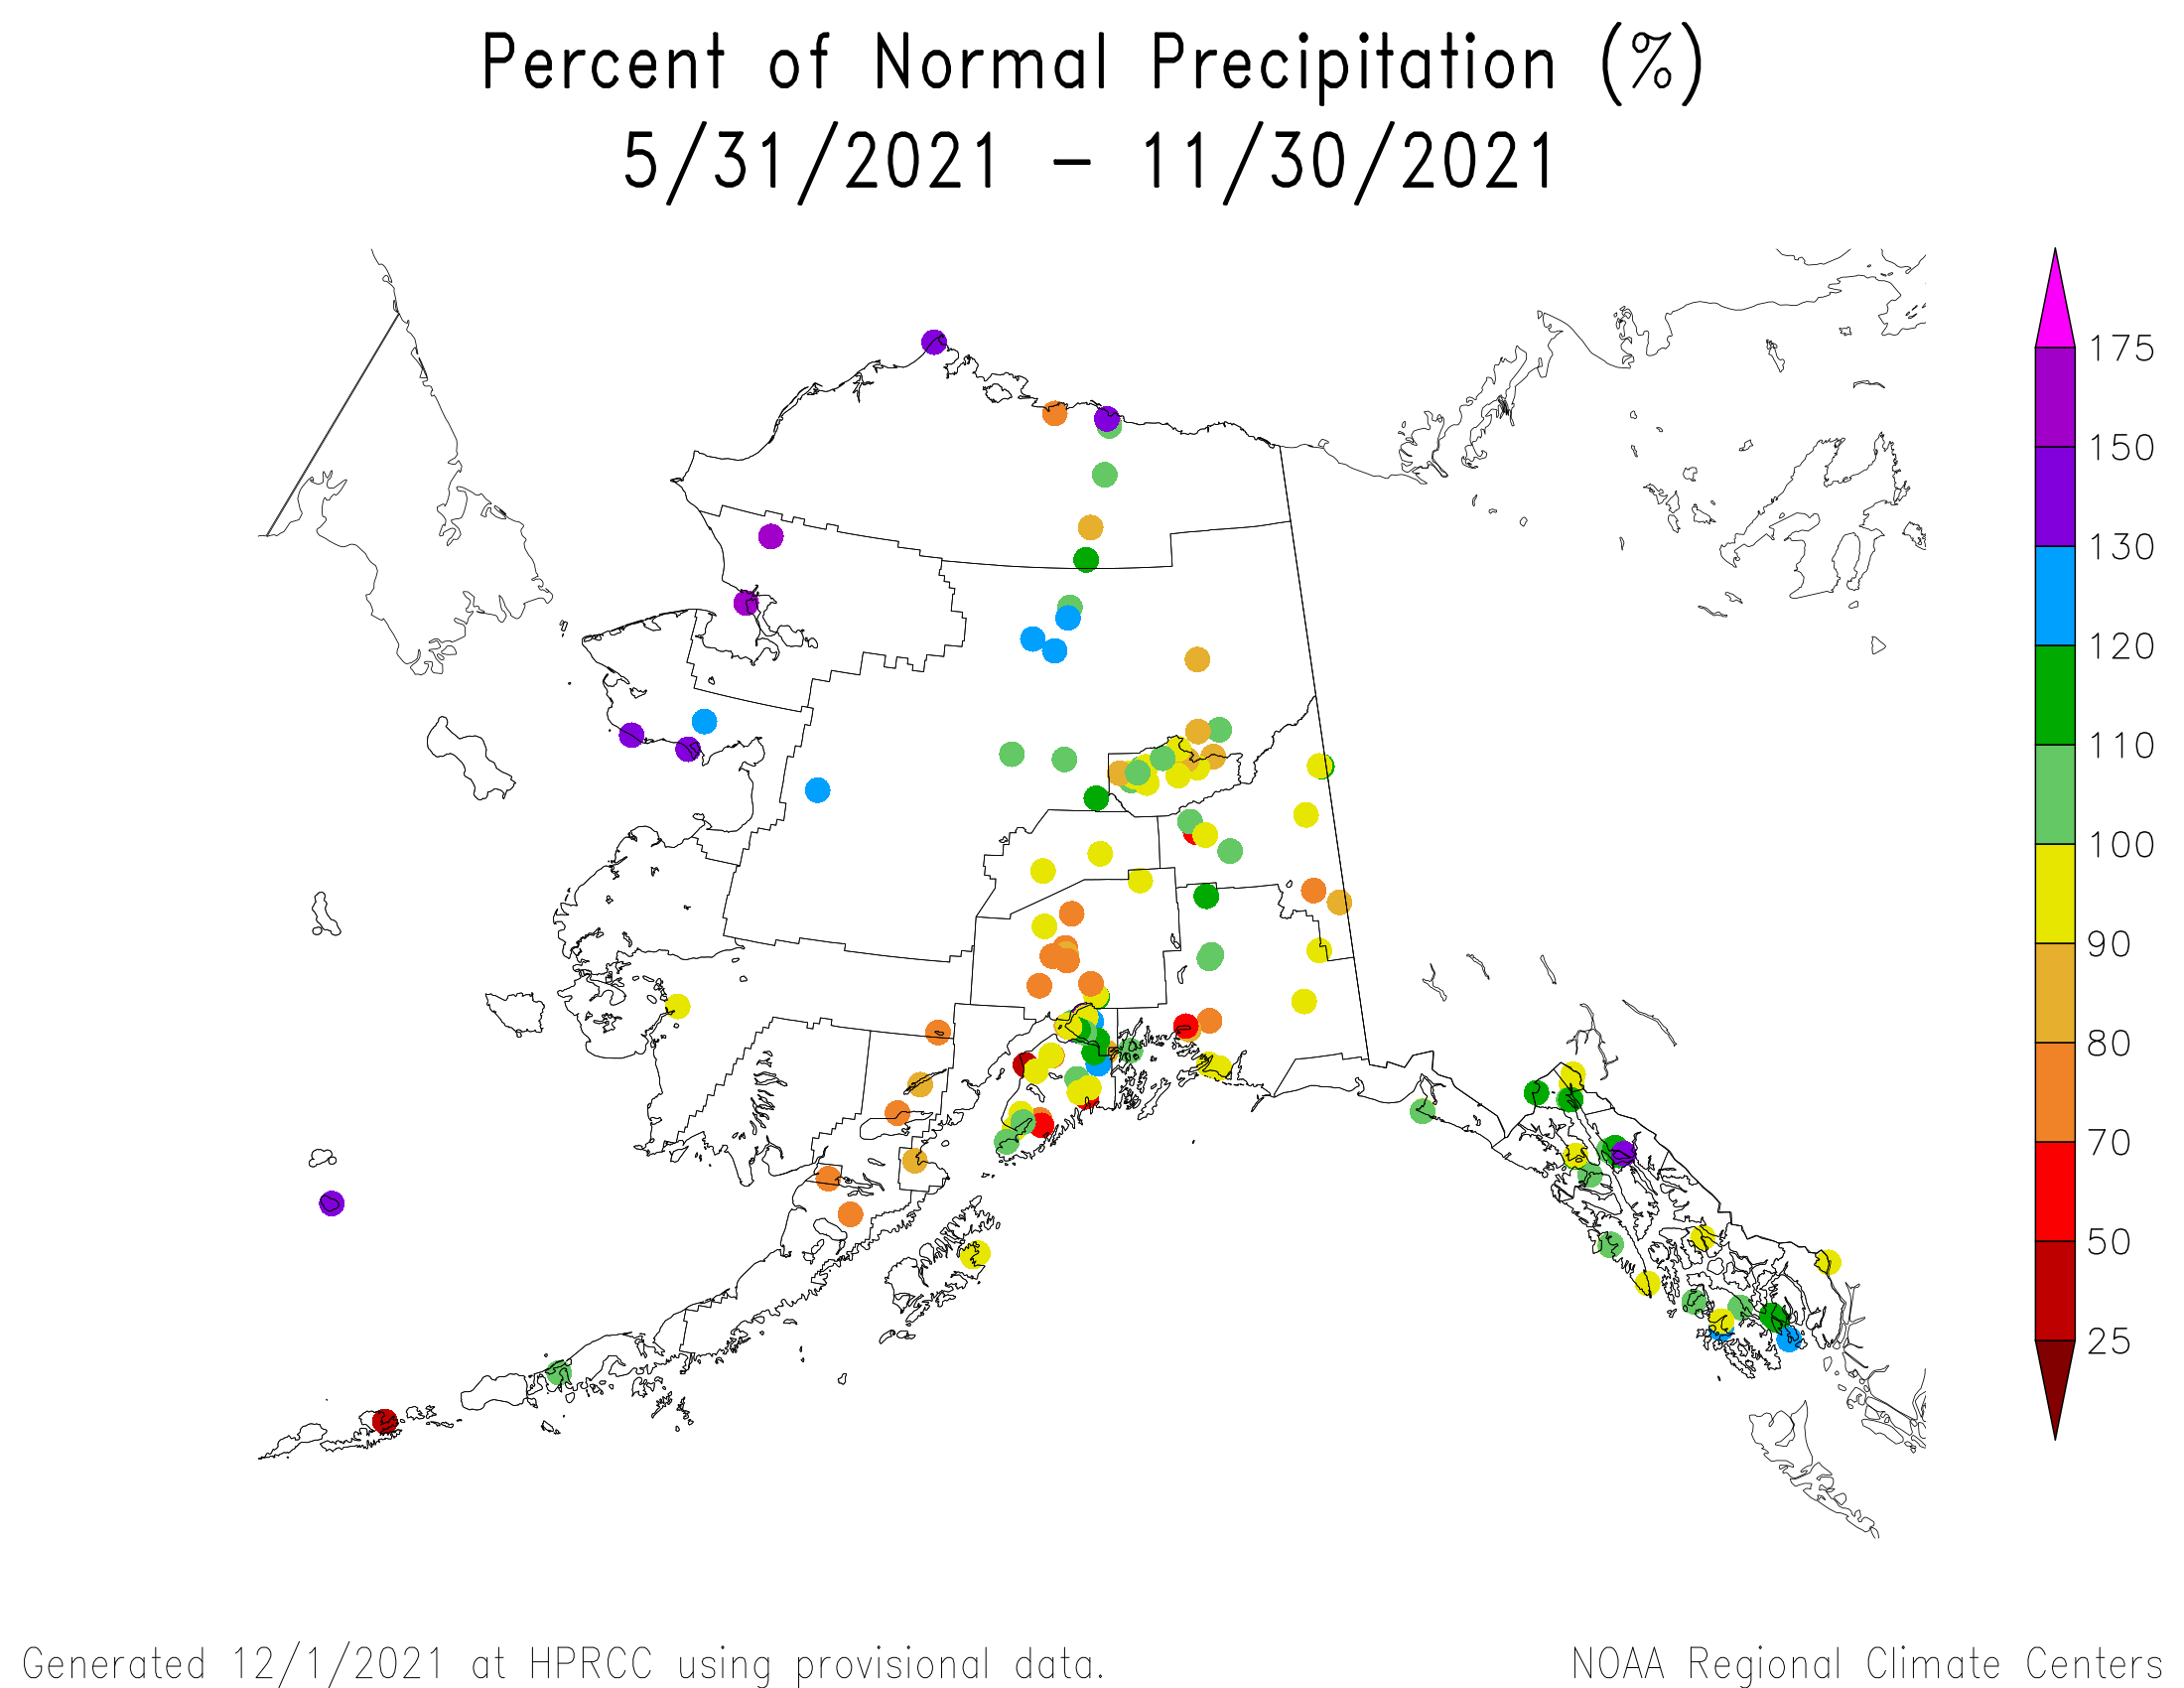 Alaska Percent of Normal Precipitation, June-November 2021